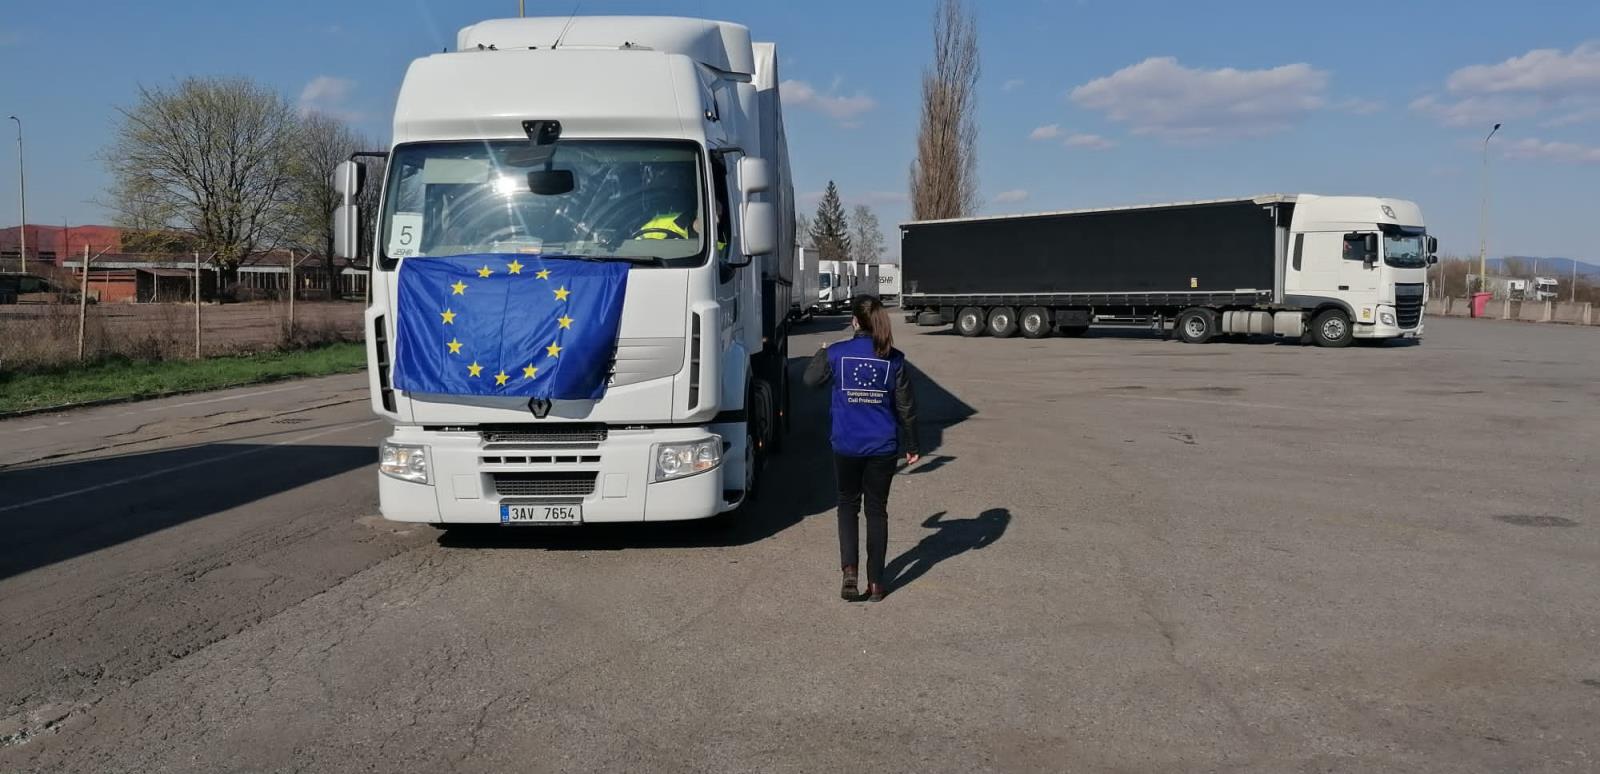 Naši styční důstojníci působící na slovensko-ukrajinských hranicích zajistili předání státní humanitární pomoci Ukrajině